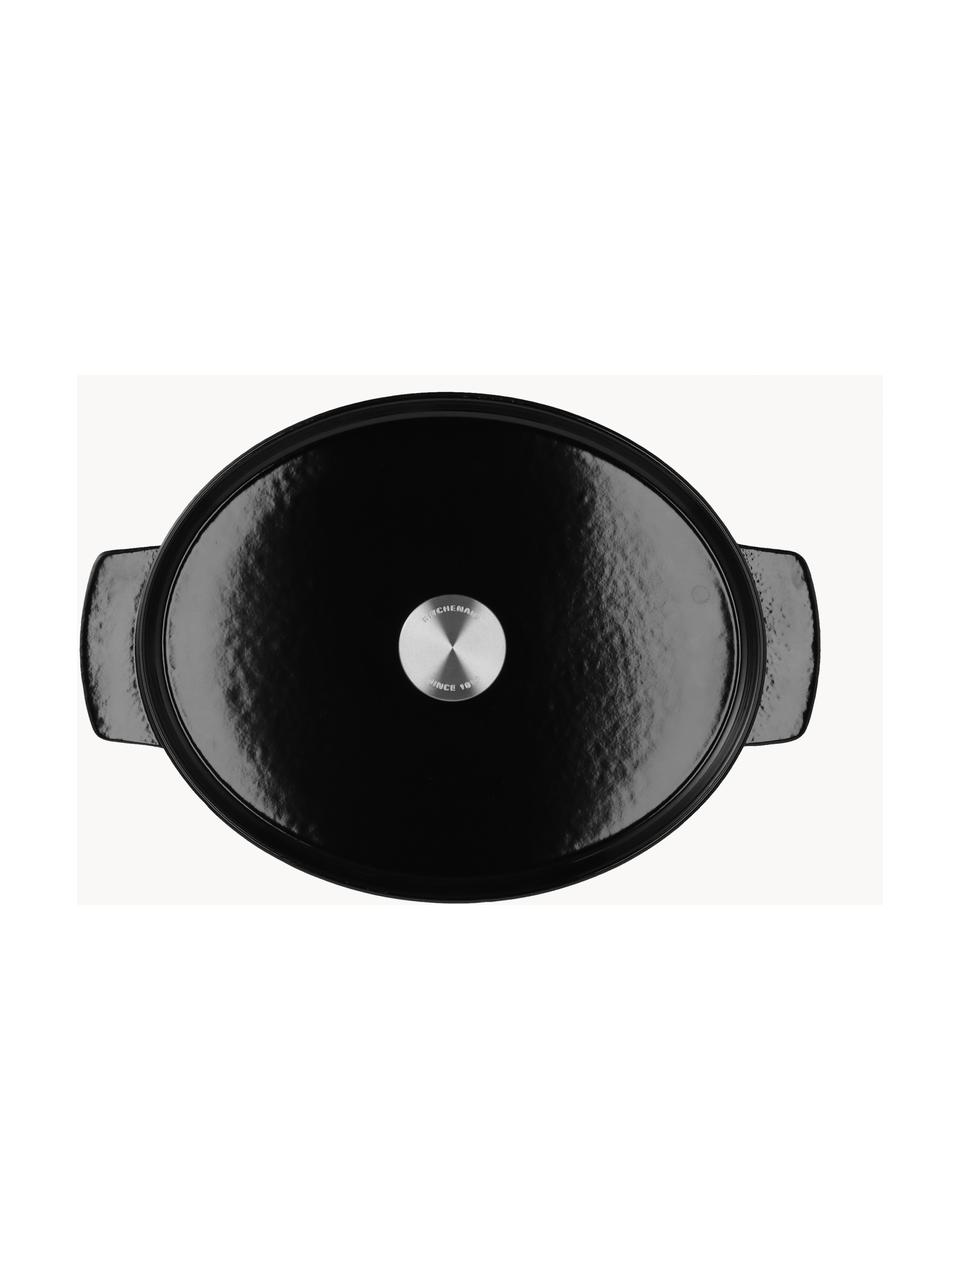 Ovale braadpan Doelle met antiaanbaklaag, Gietijzer met keramische antiaanbaklaag, Zwart, L 40 cm, B 29 cm, H 16 cm